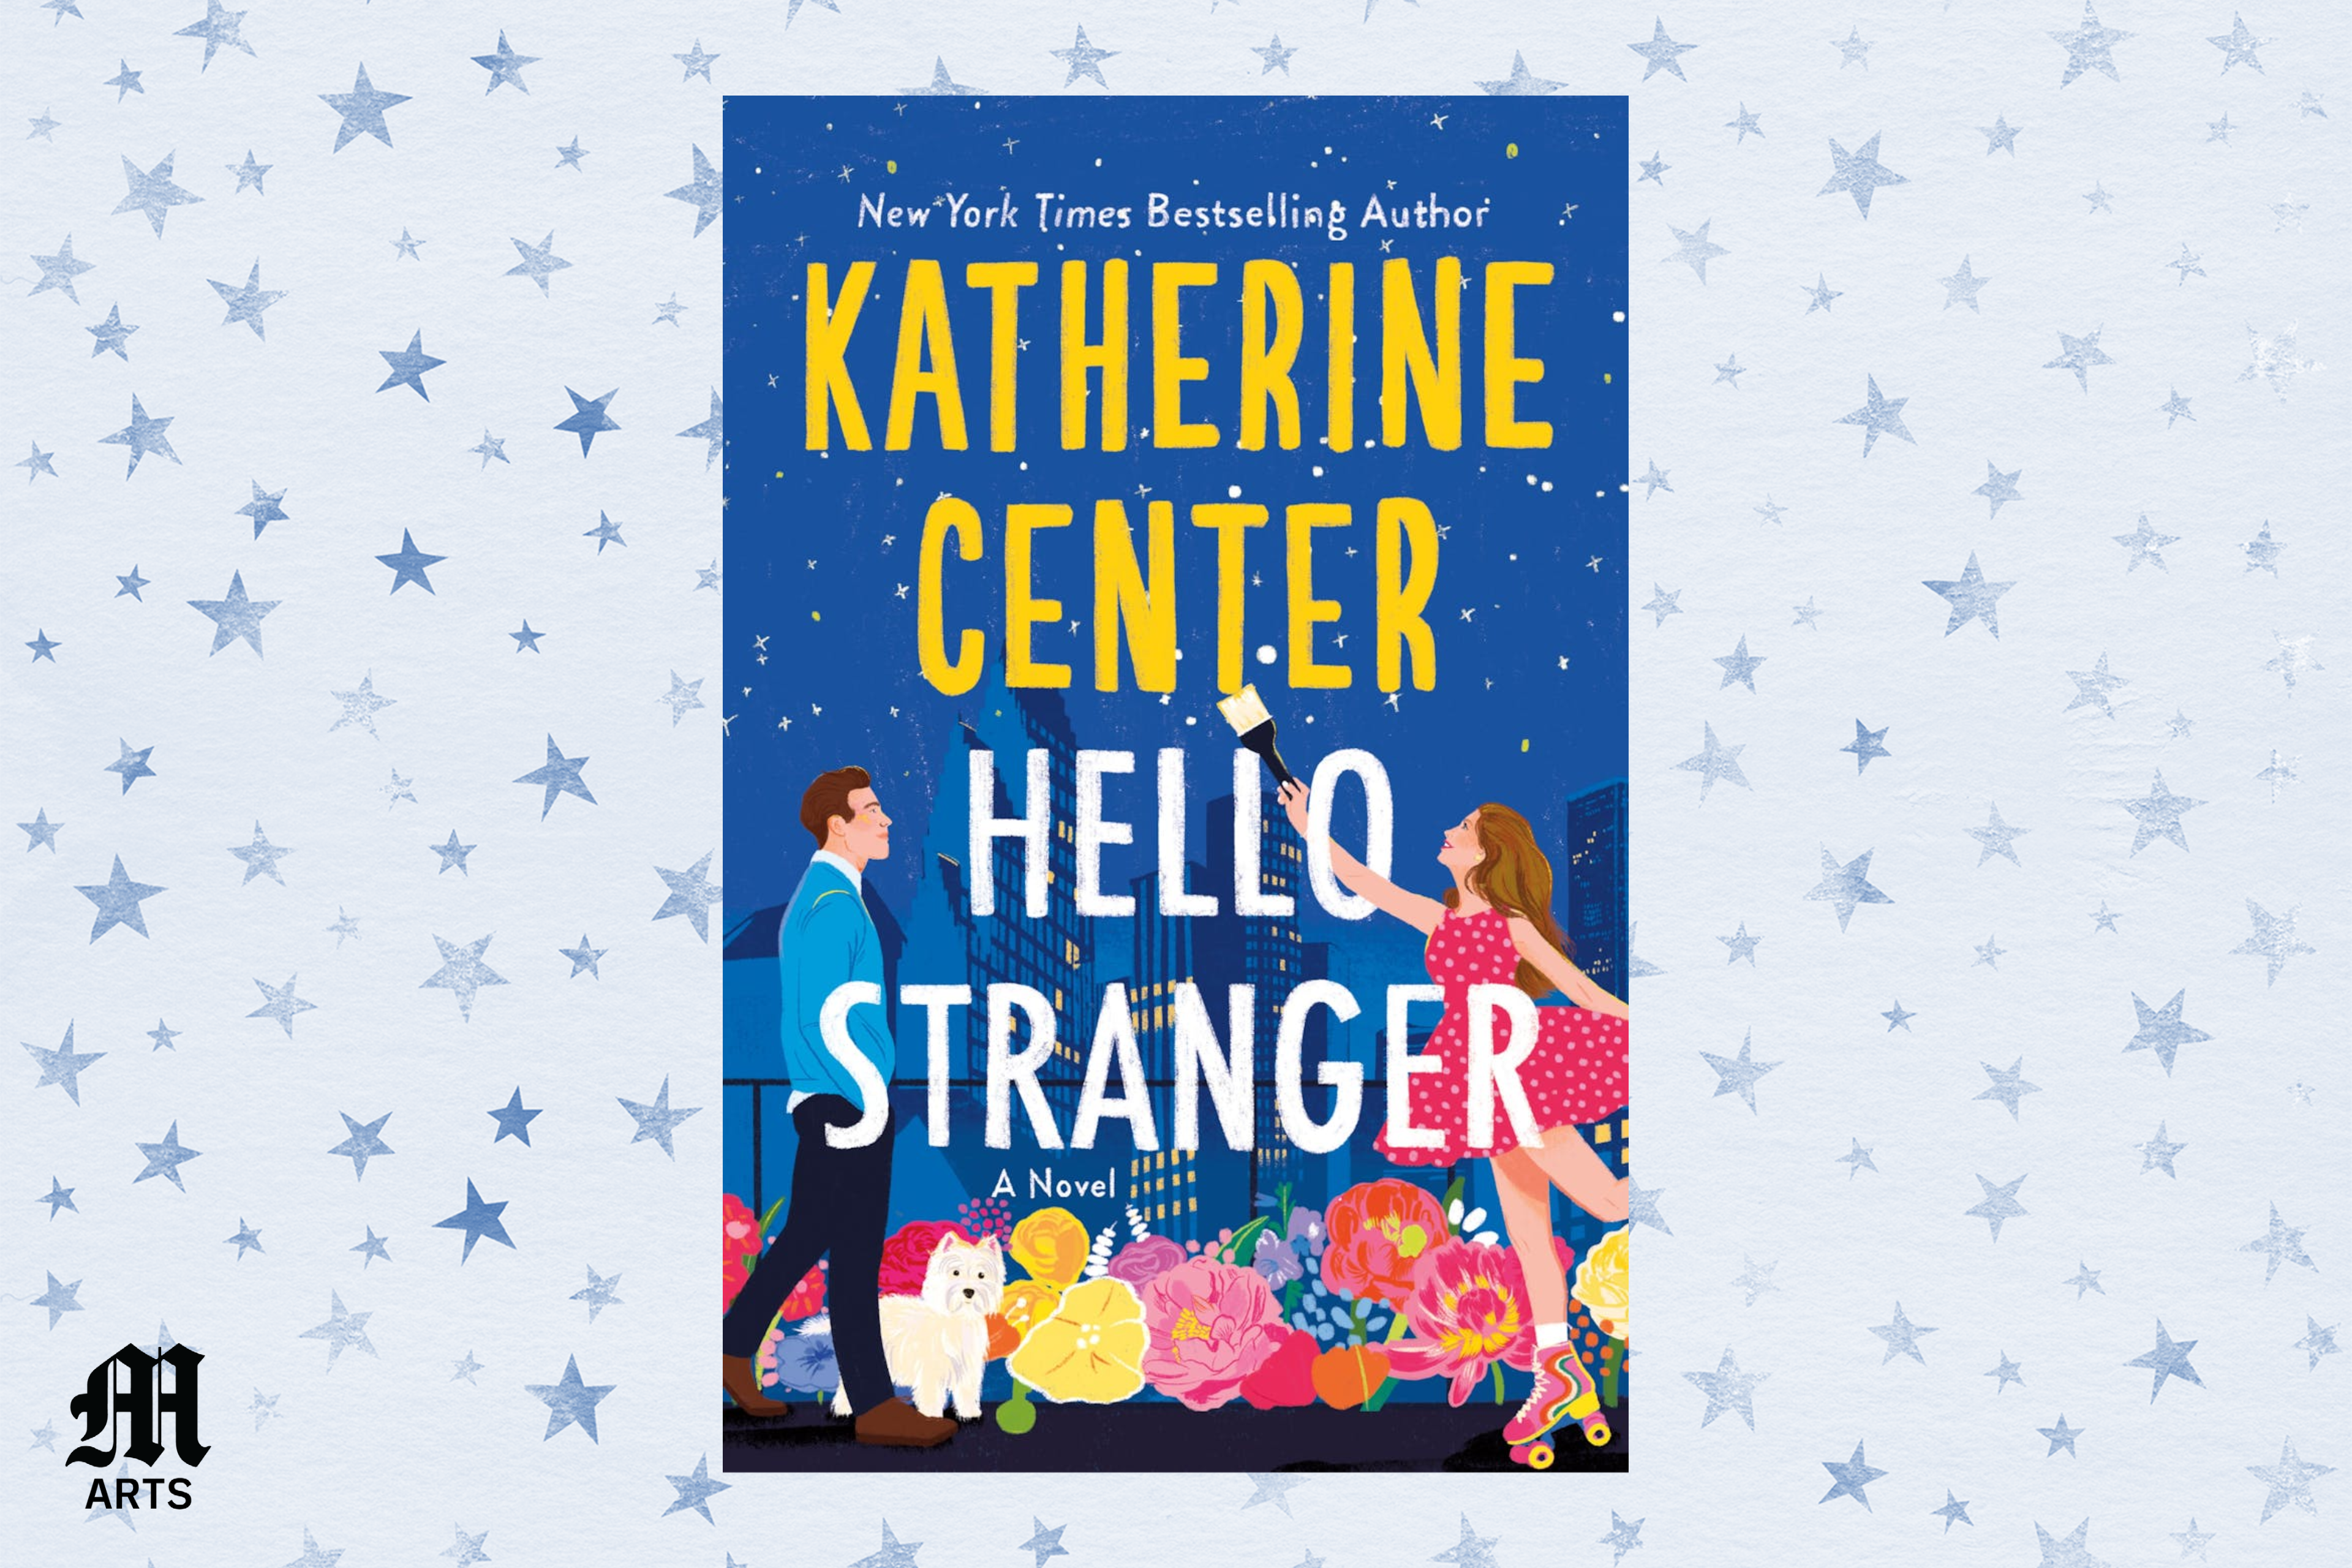 NYT bestselling author Katherine Center on Hello Stranger photo photo